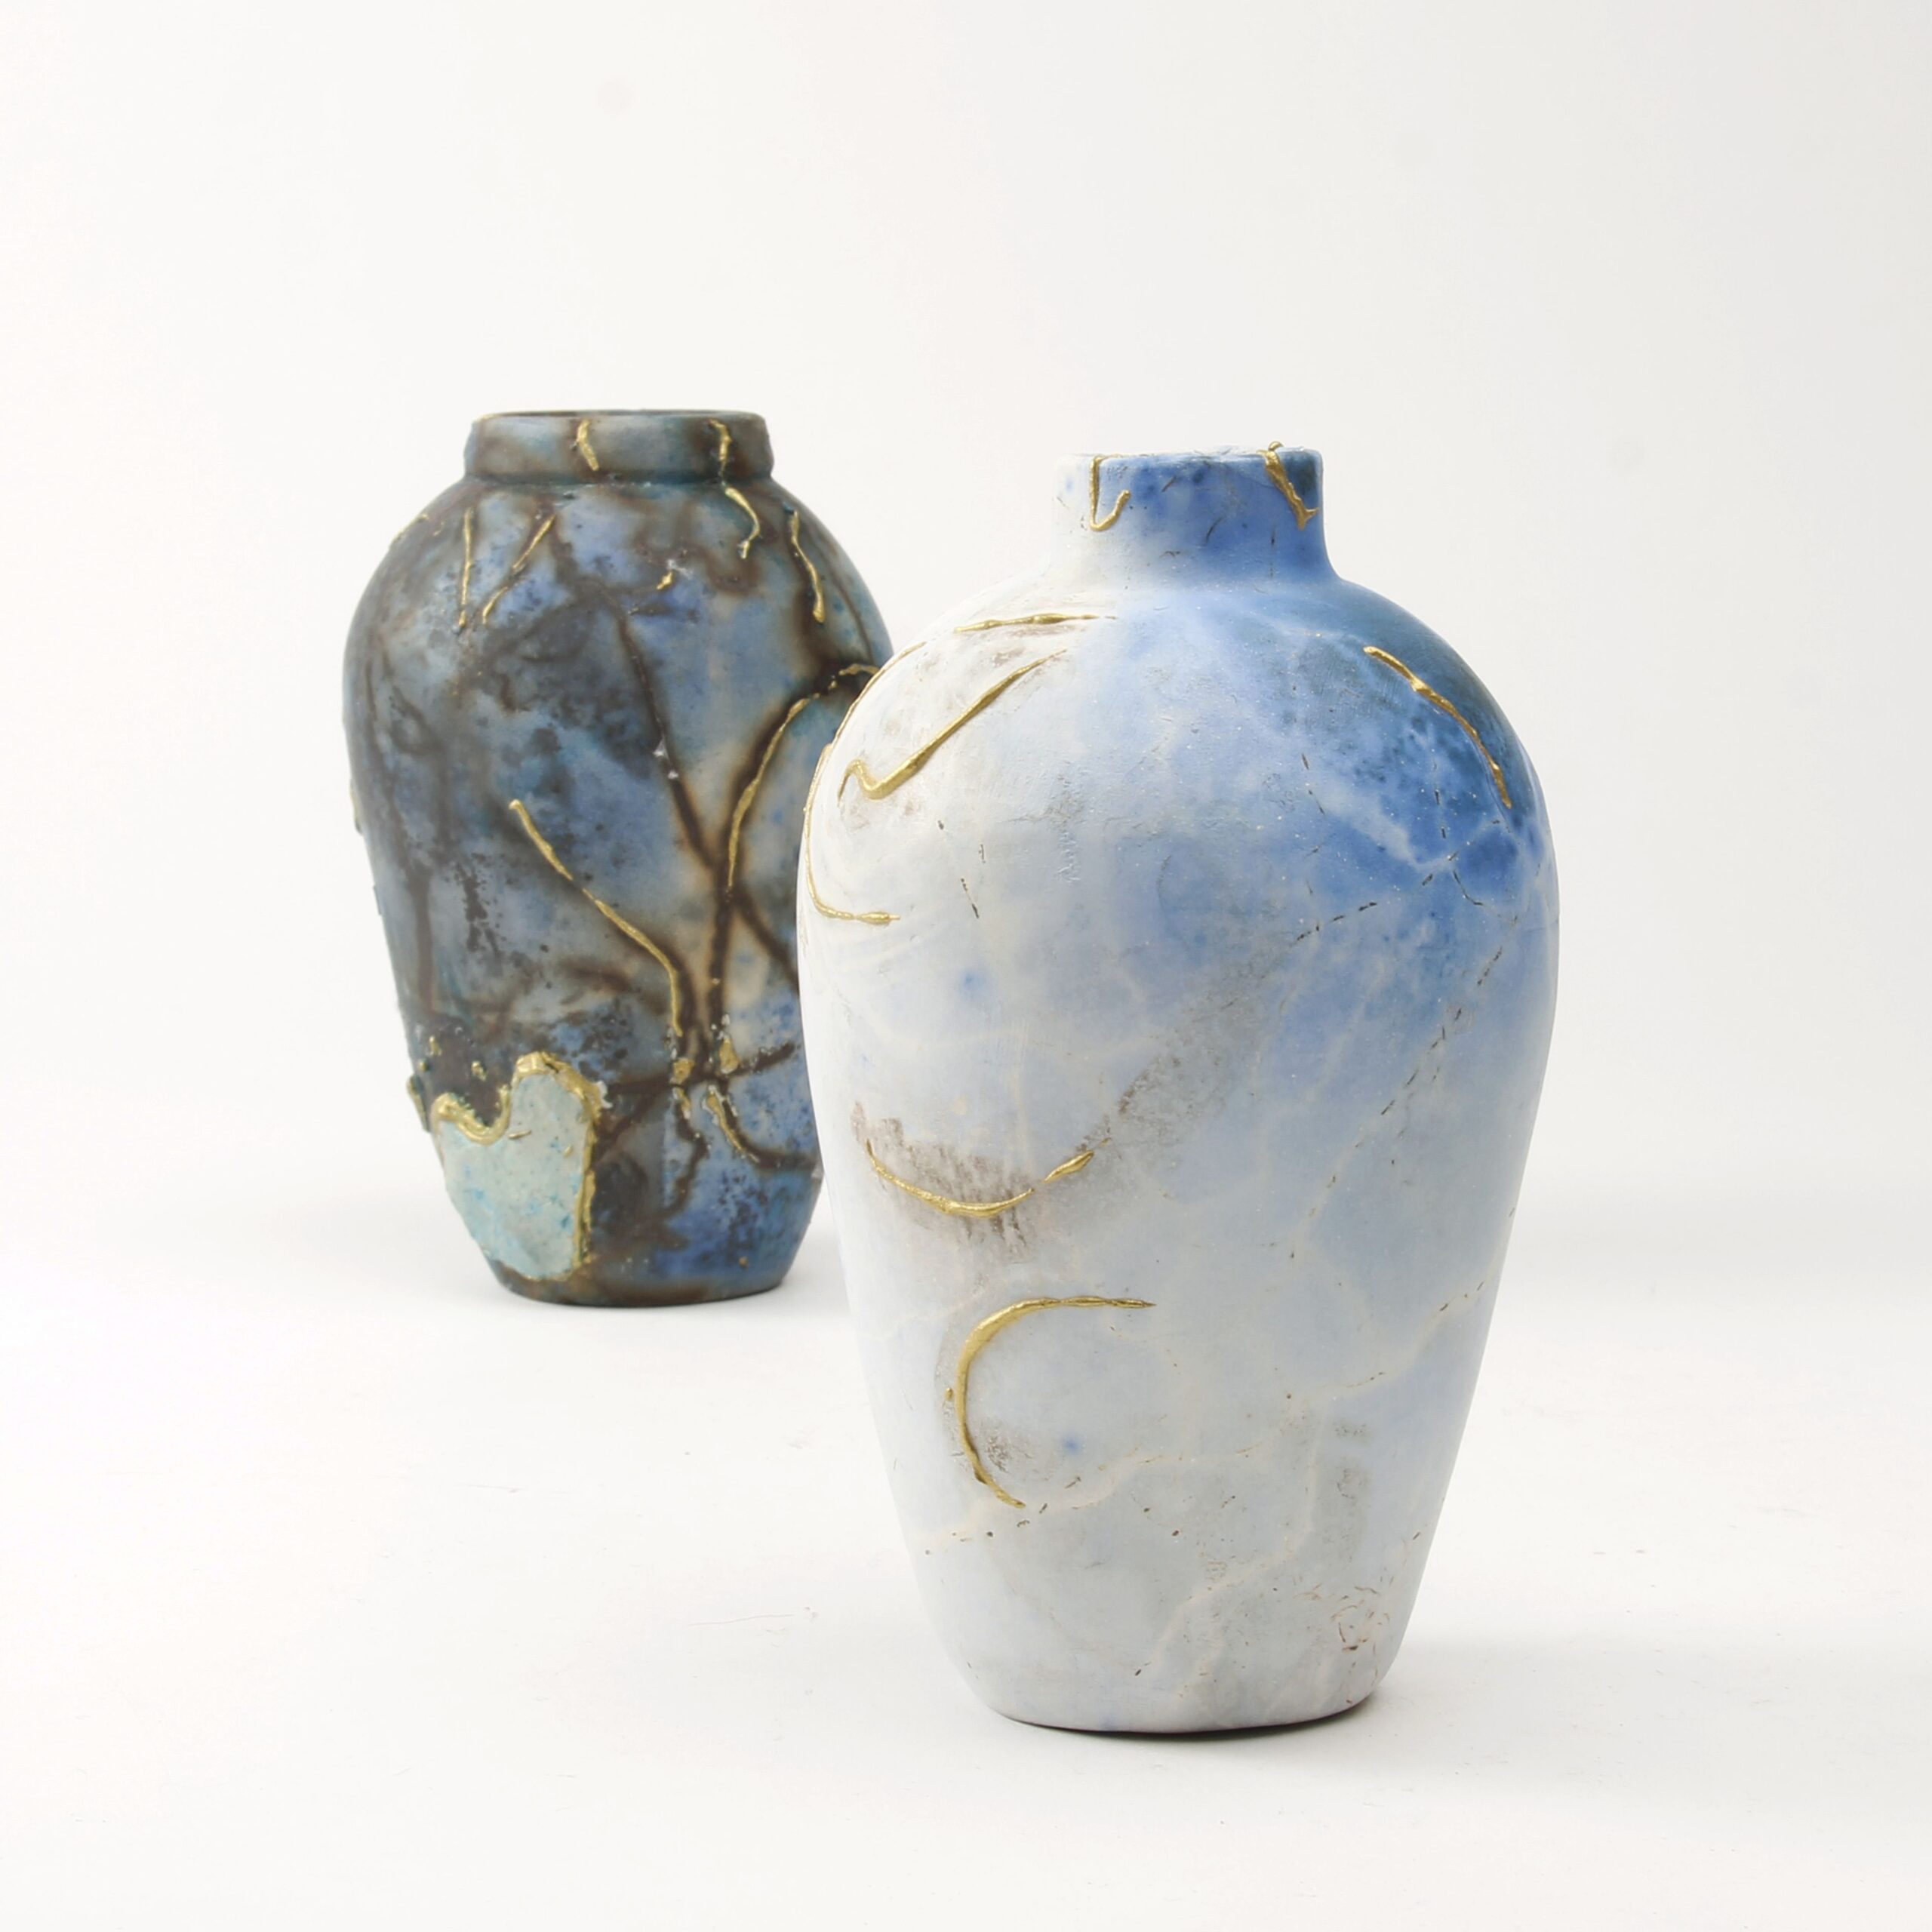 Alison Brannen: Medium Classic Urn Product Image 2 of 6